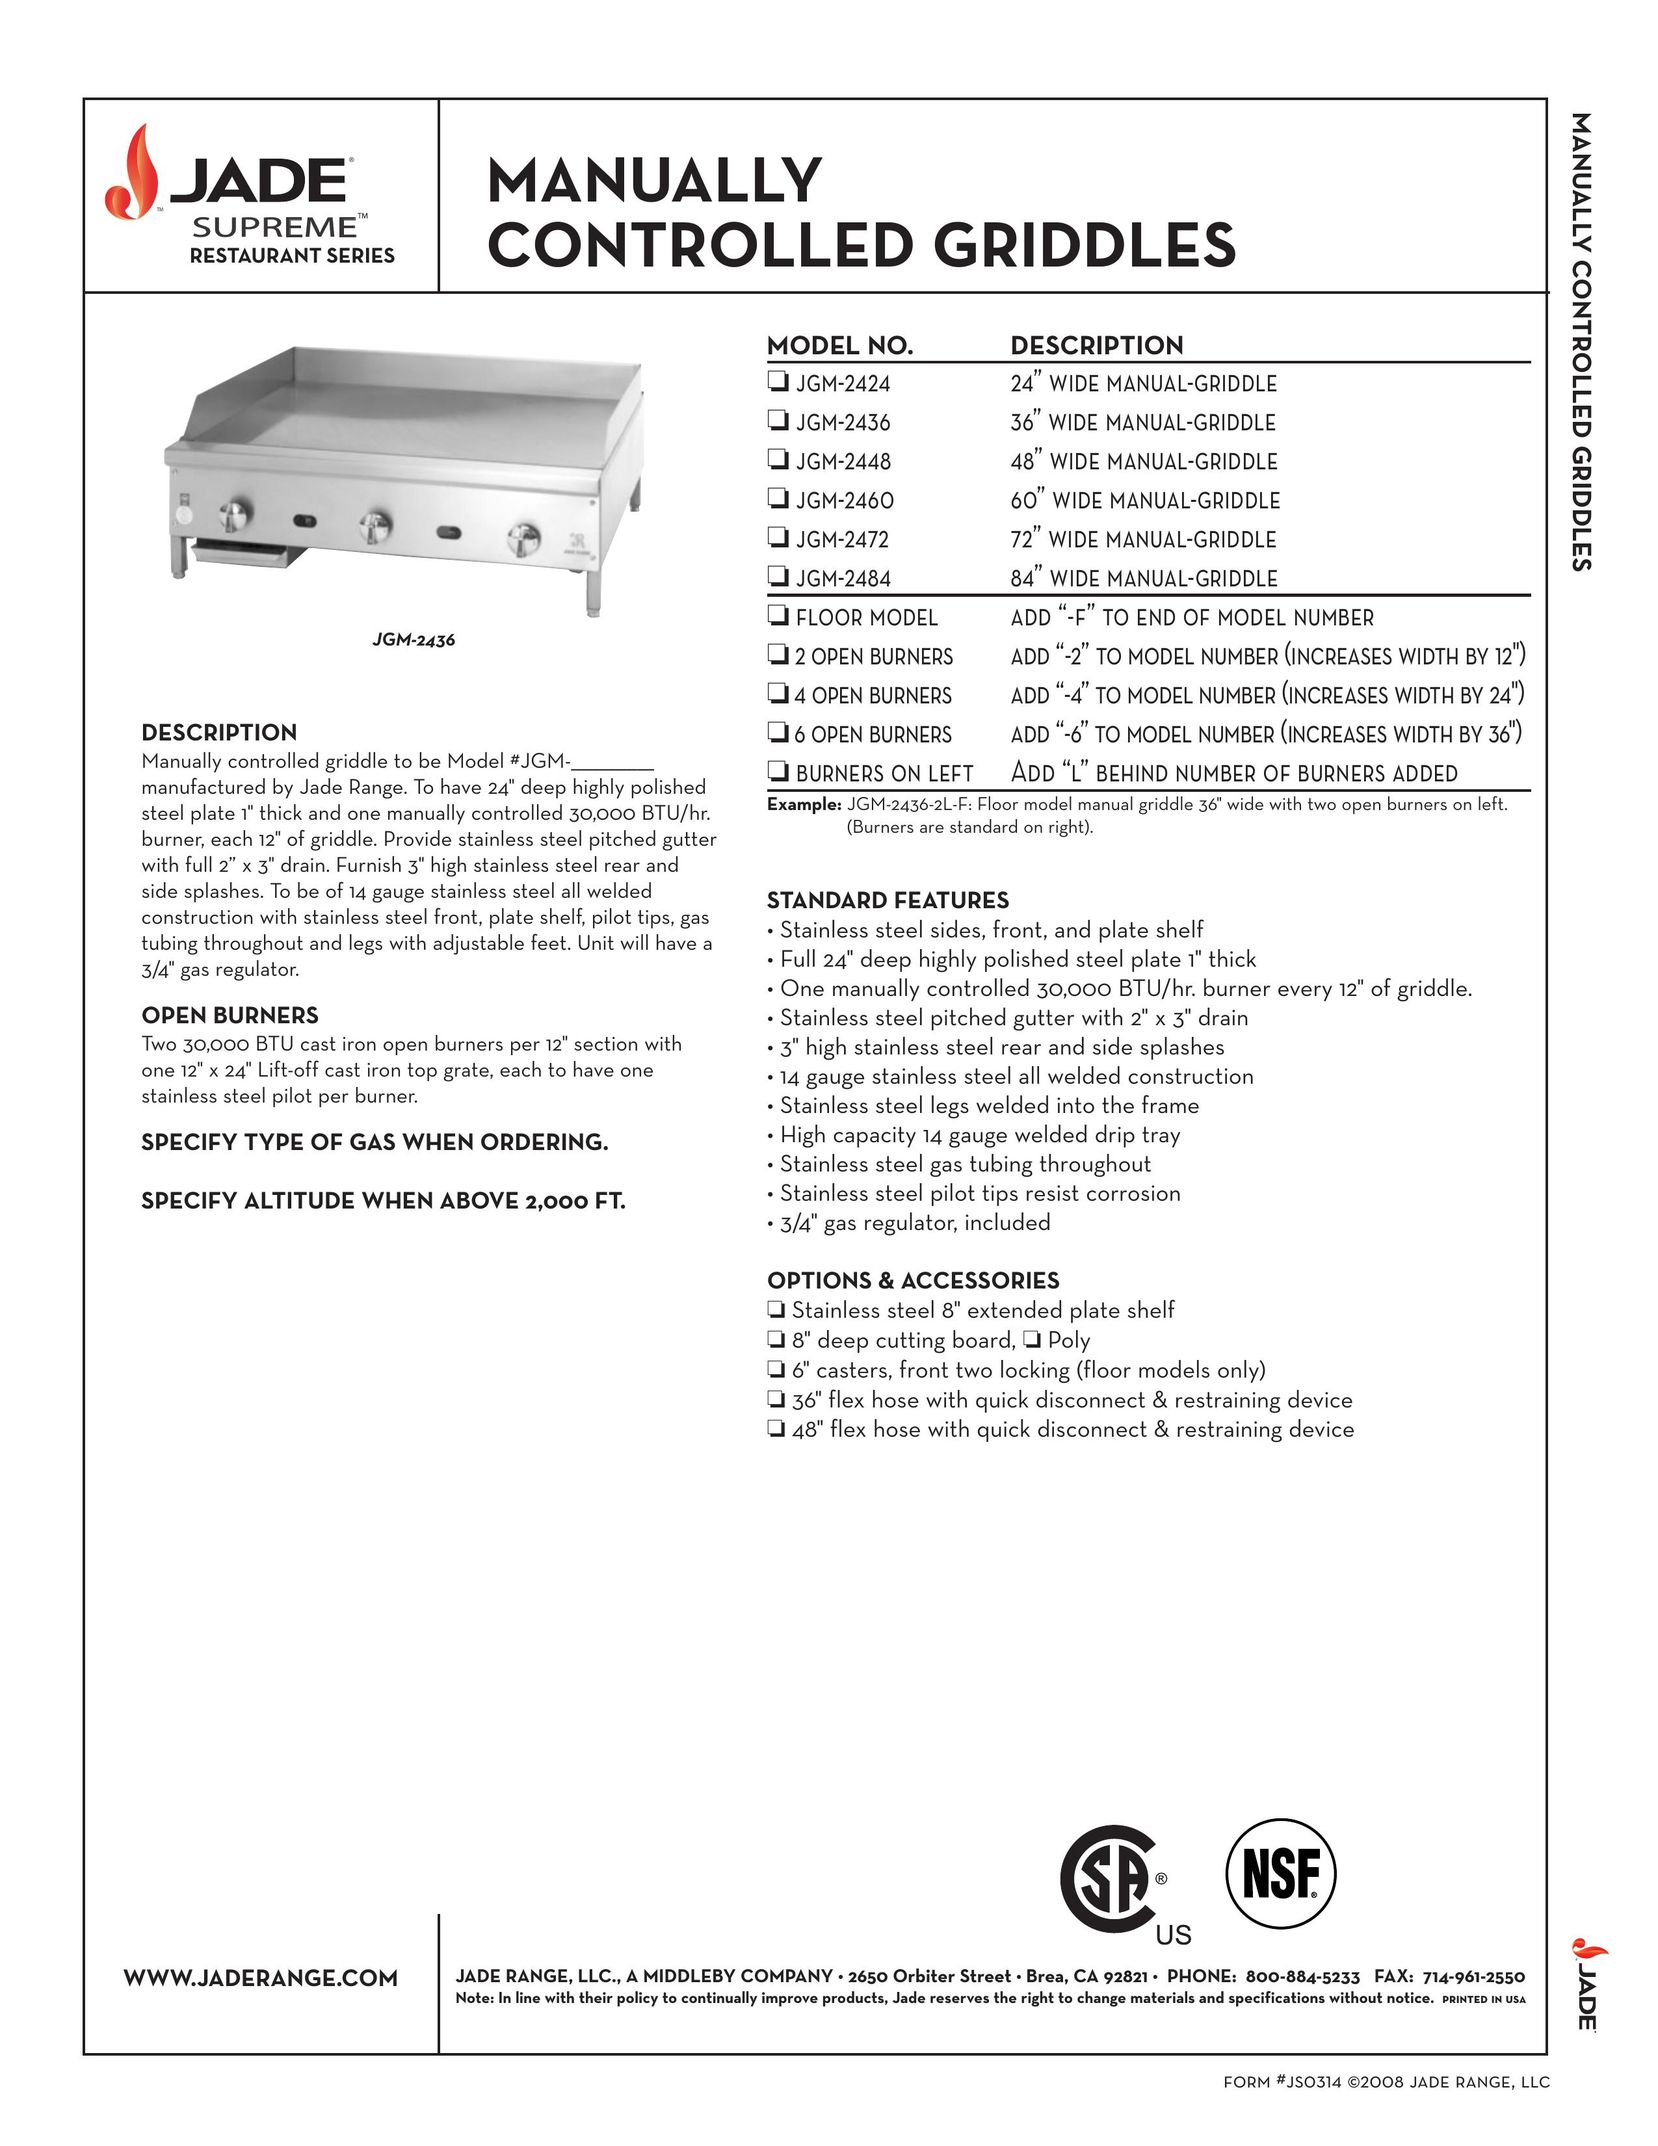 Jade Range JGM-2424 Griddle User Manual